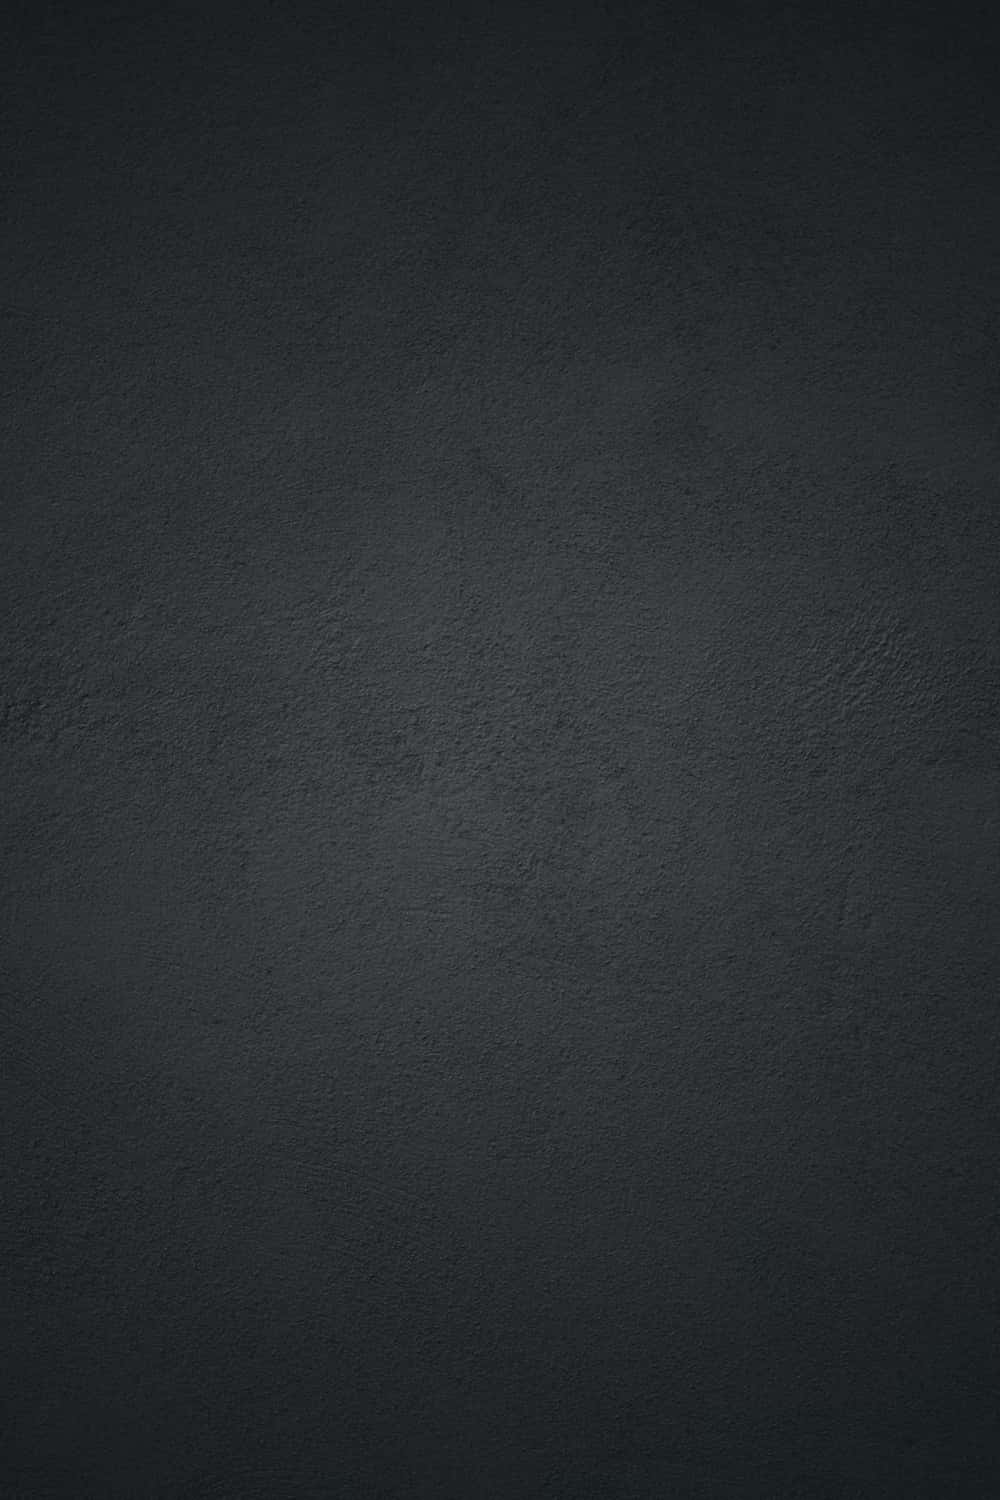 Dark Textured Background Wallpaper